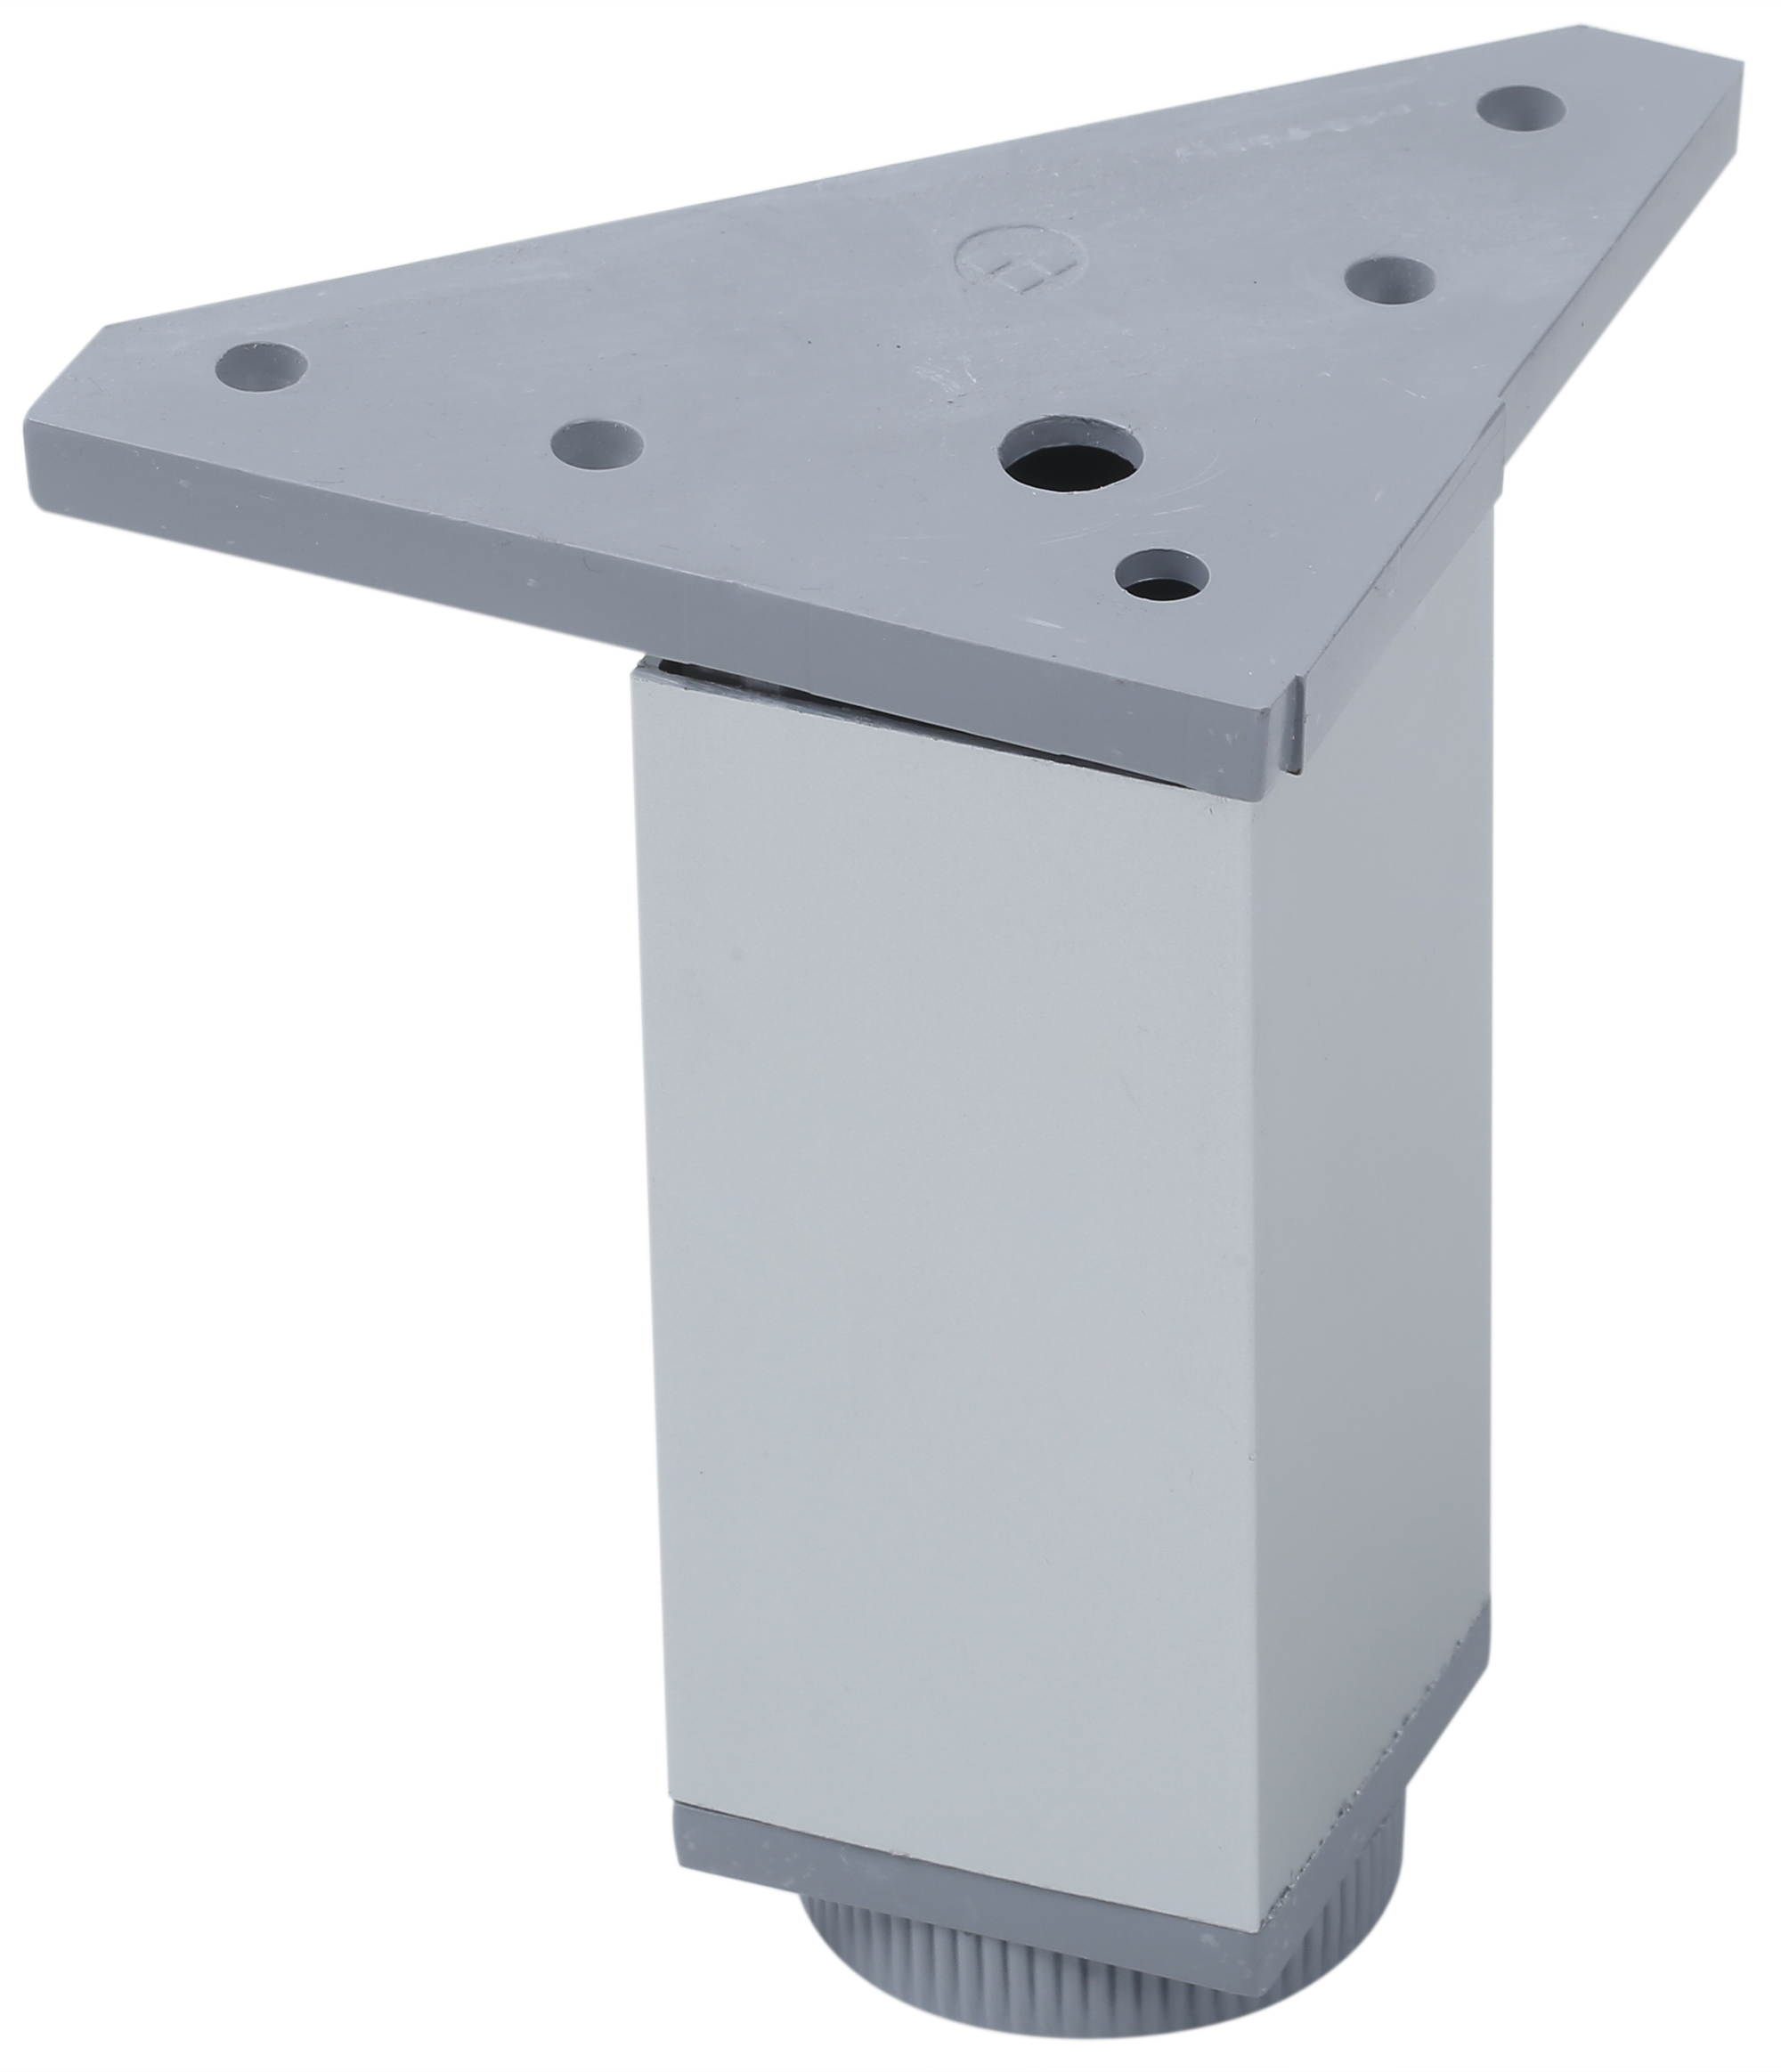 Pata regulable de aluminio para mueble hasta 12 cm con acabado anodizado mate